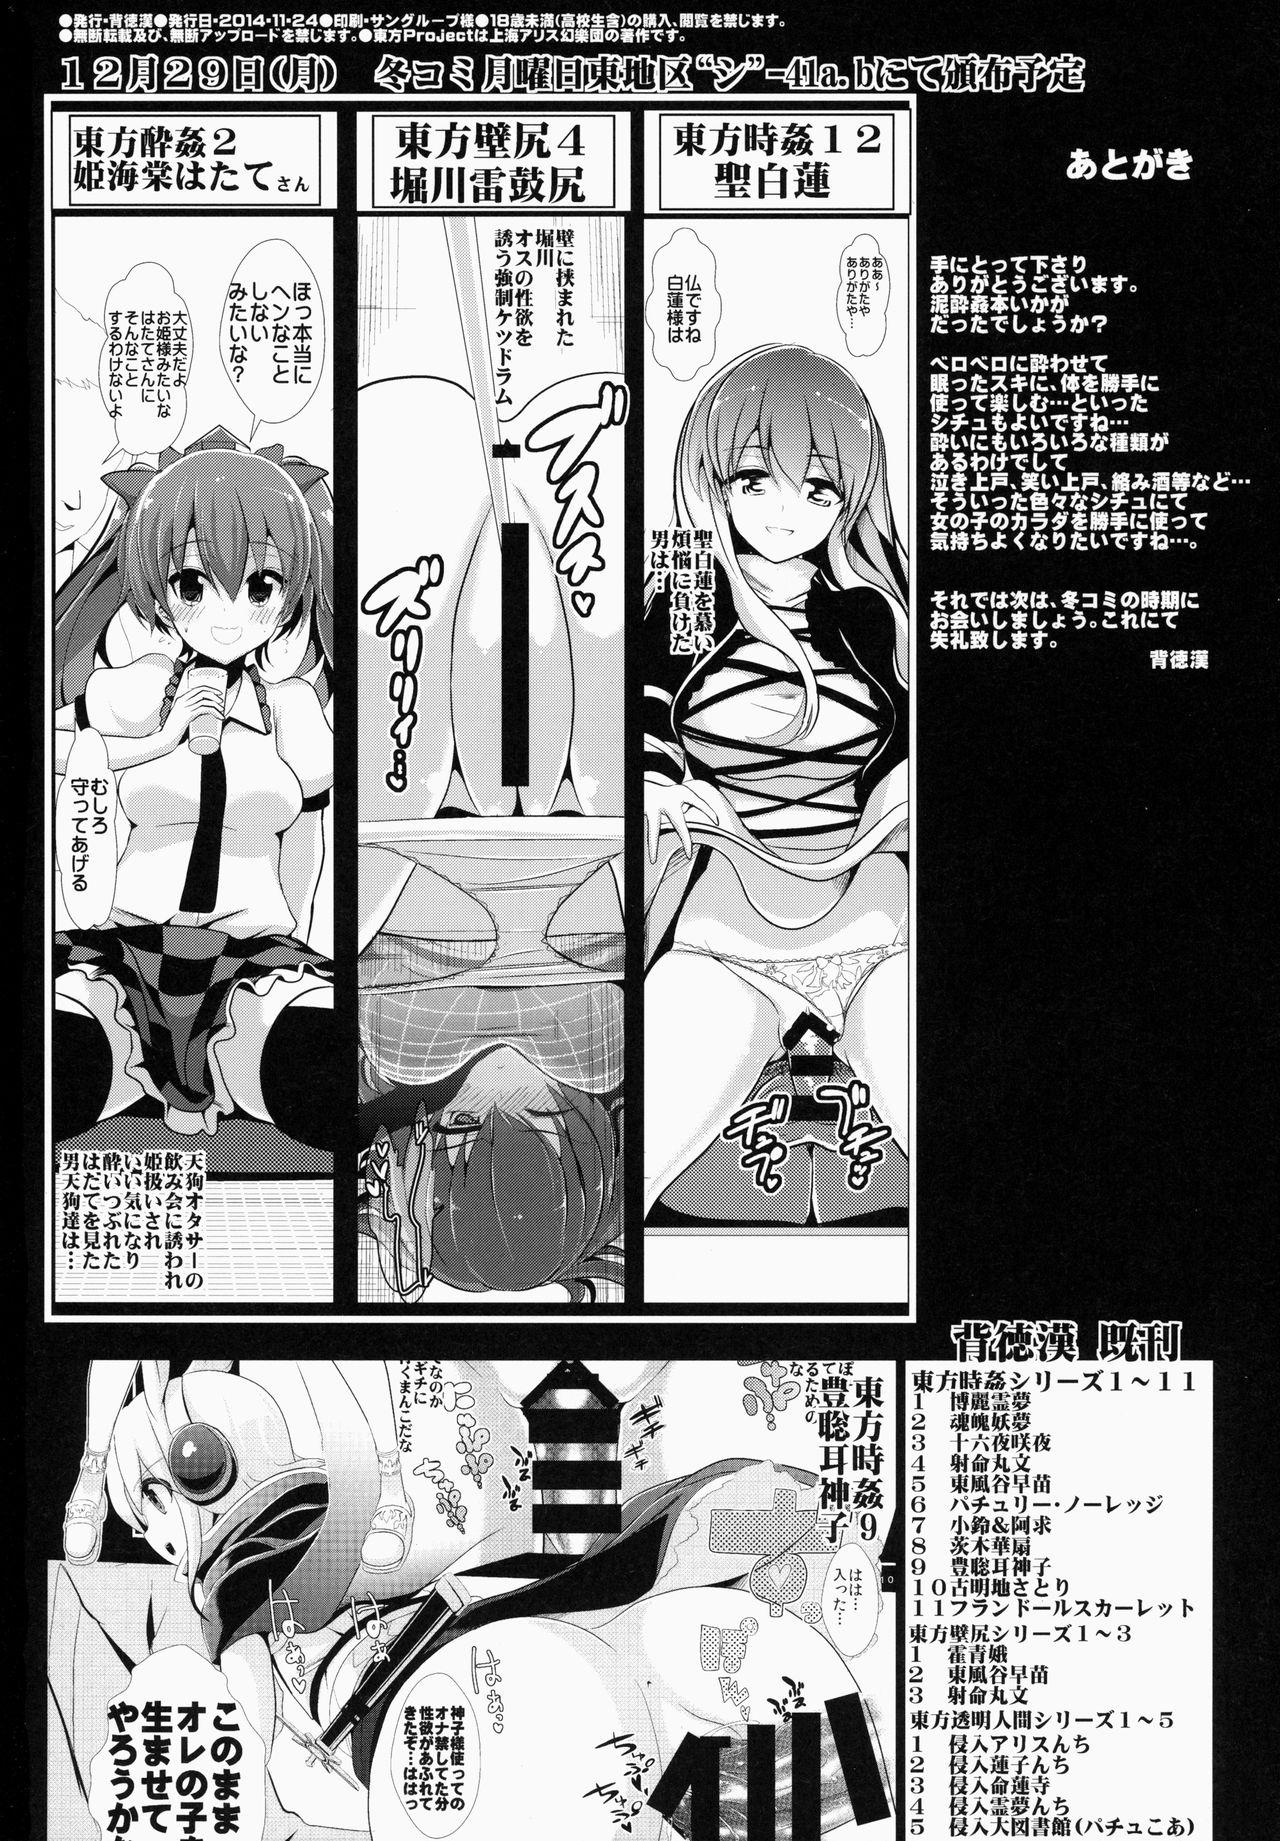 Fake Tits Touhou Deisuikan 1 Usami Renko - Touhou project Free Real Porn - Page 21